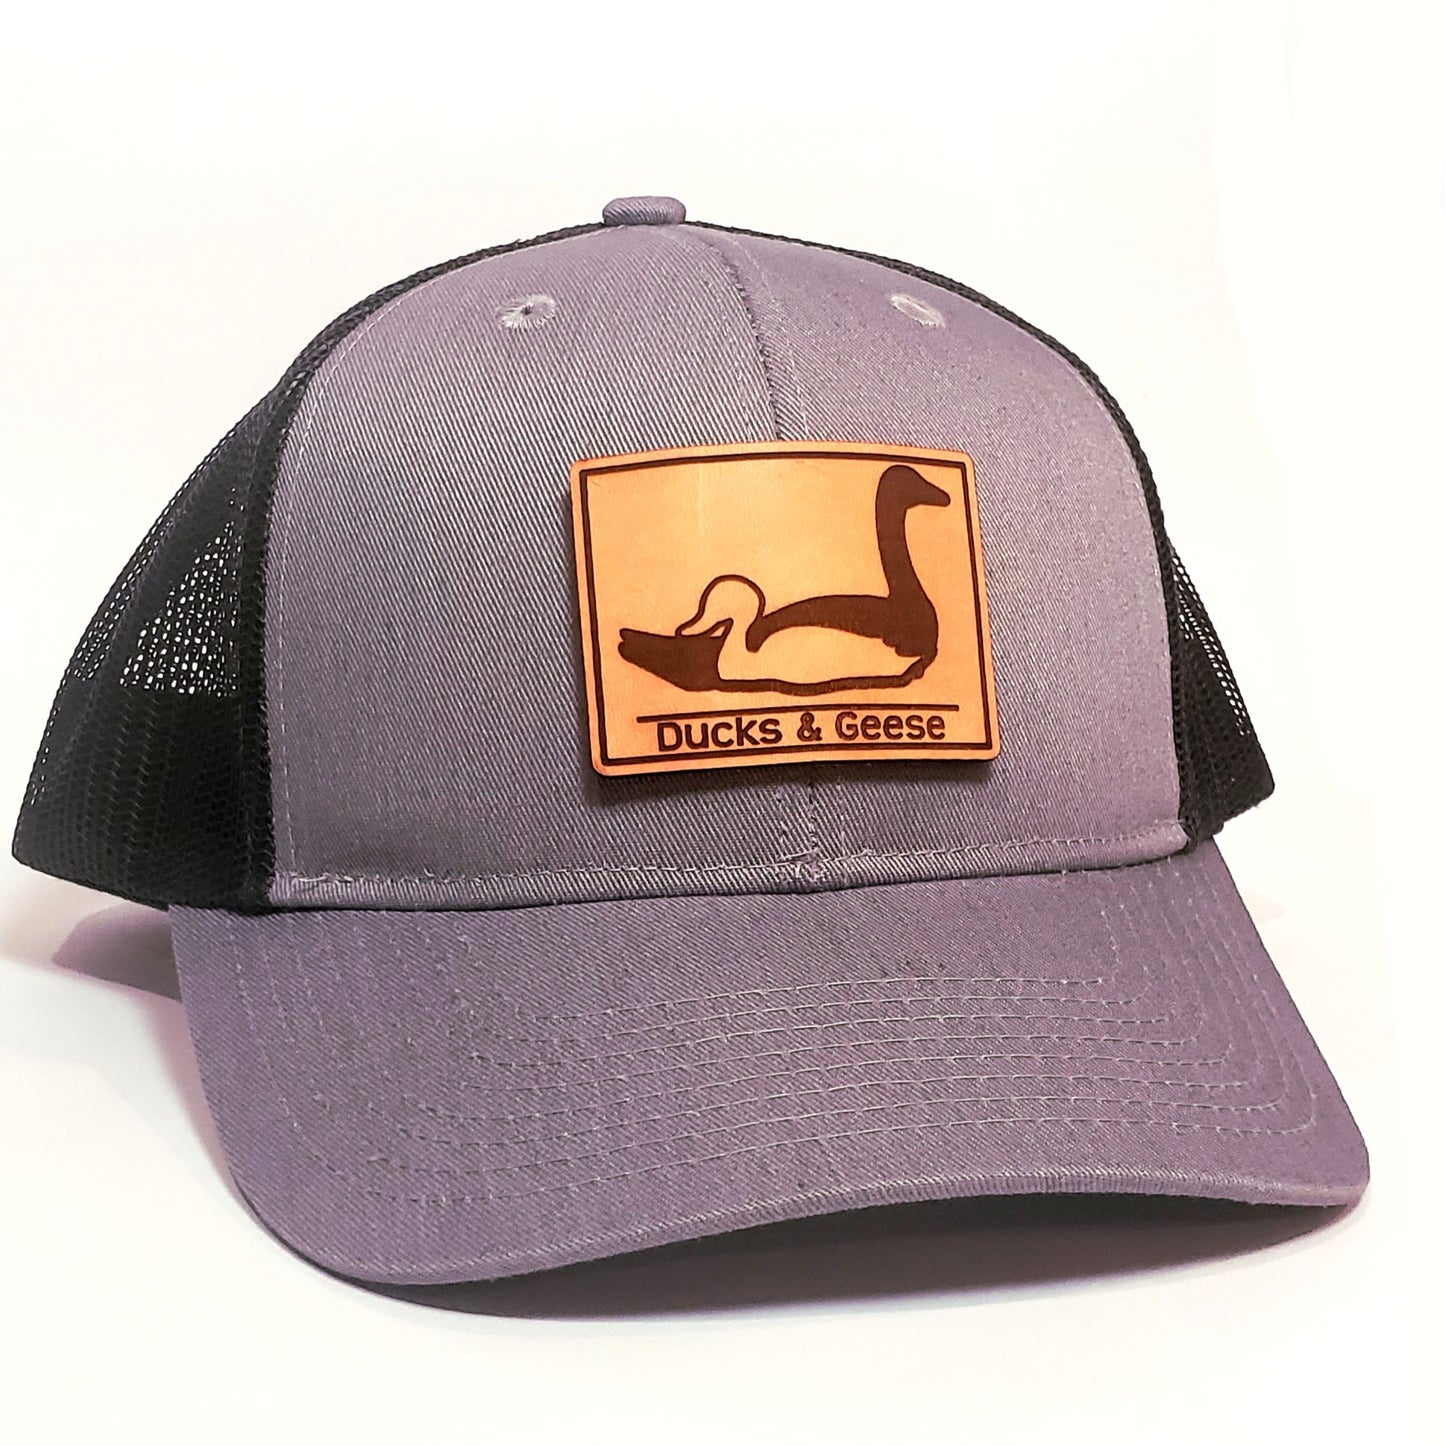 Full logo trucker hat